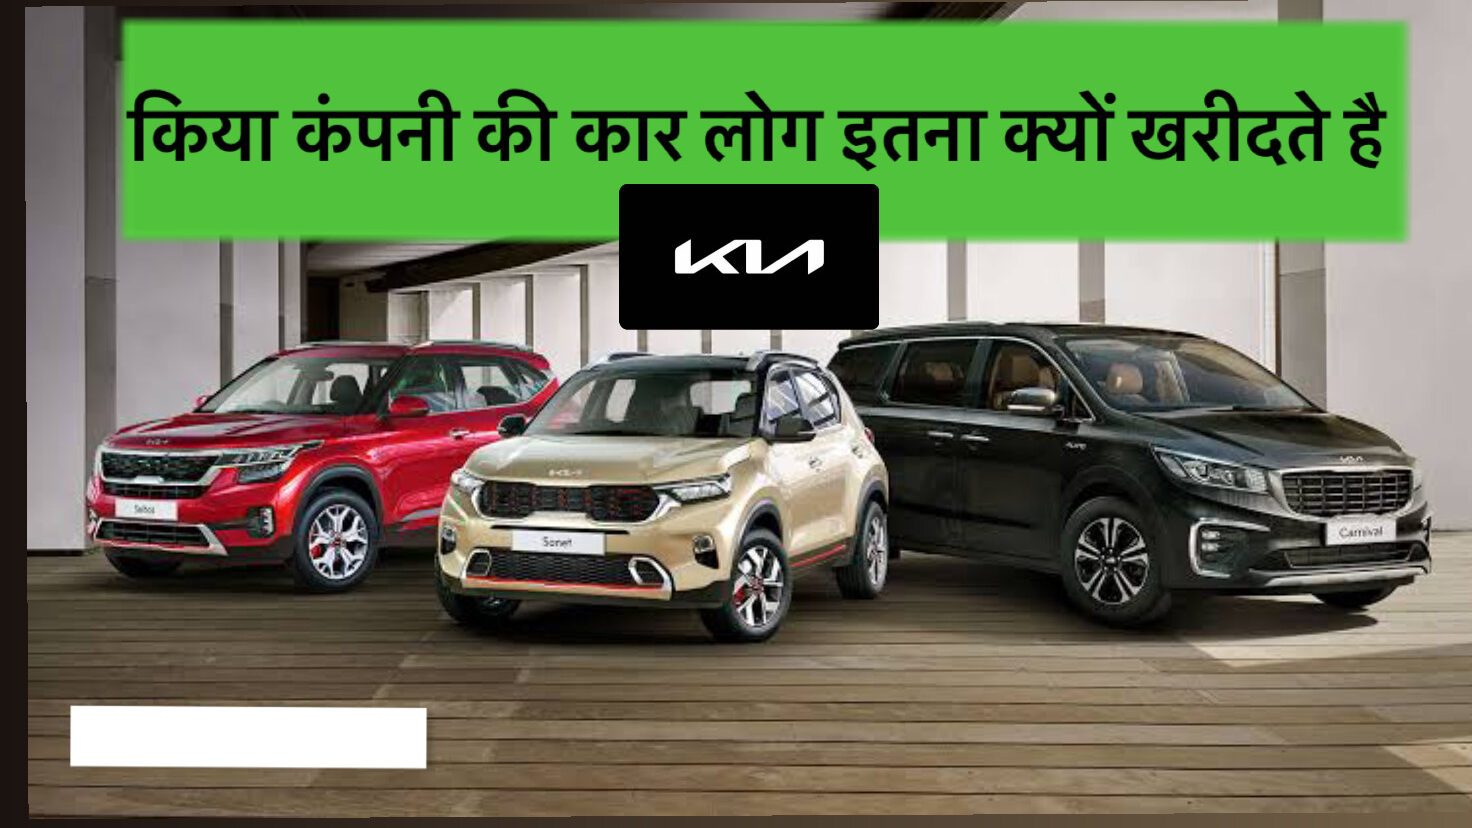 Why do people are interested to buy Kia company cars? |किया कंपनी की कार लोग इतनाक्यों खरीदते है​: